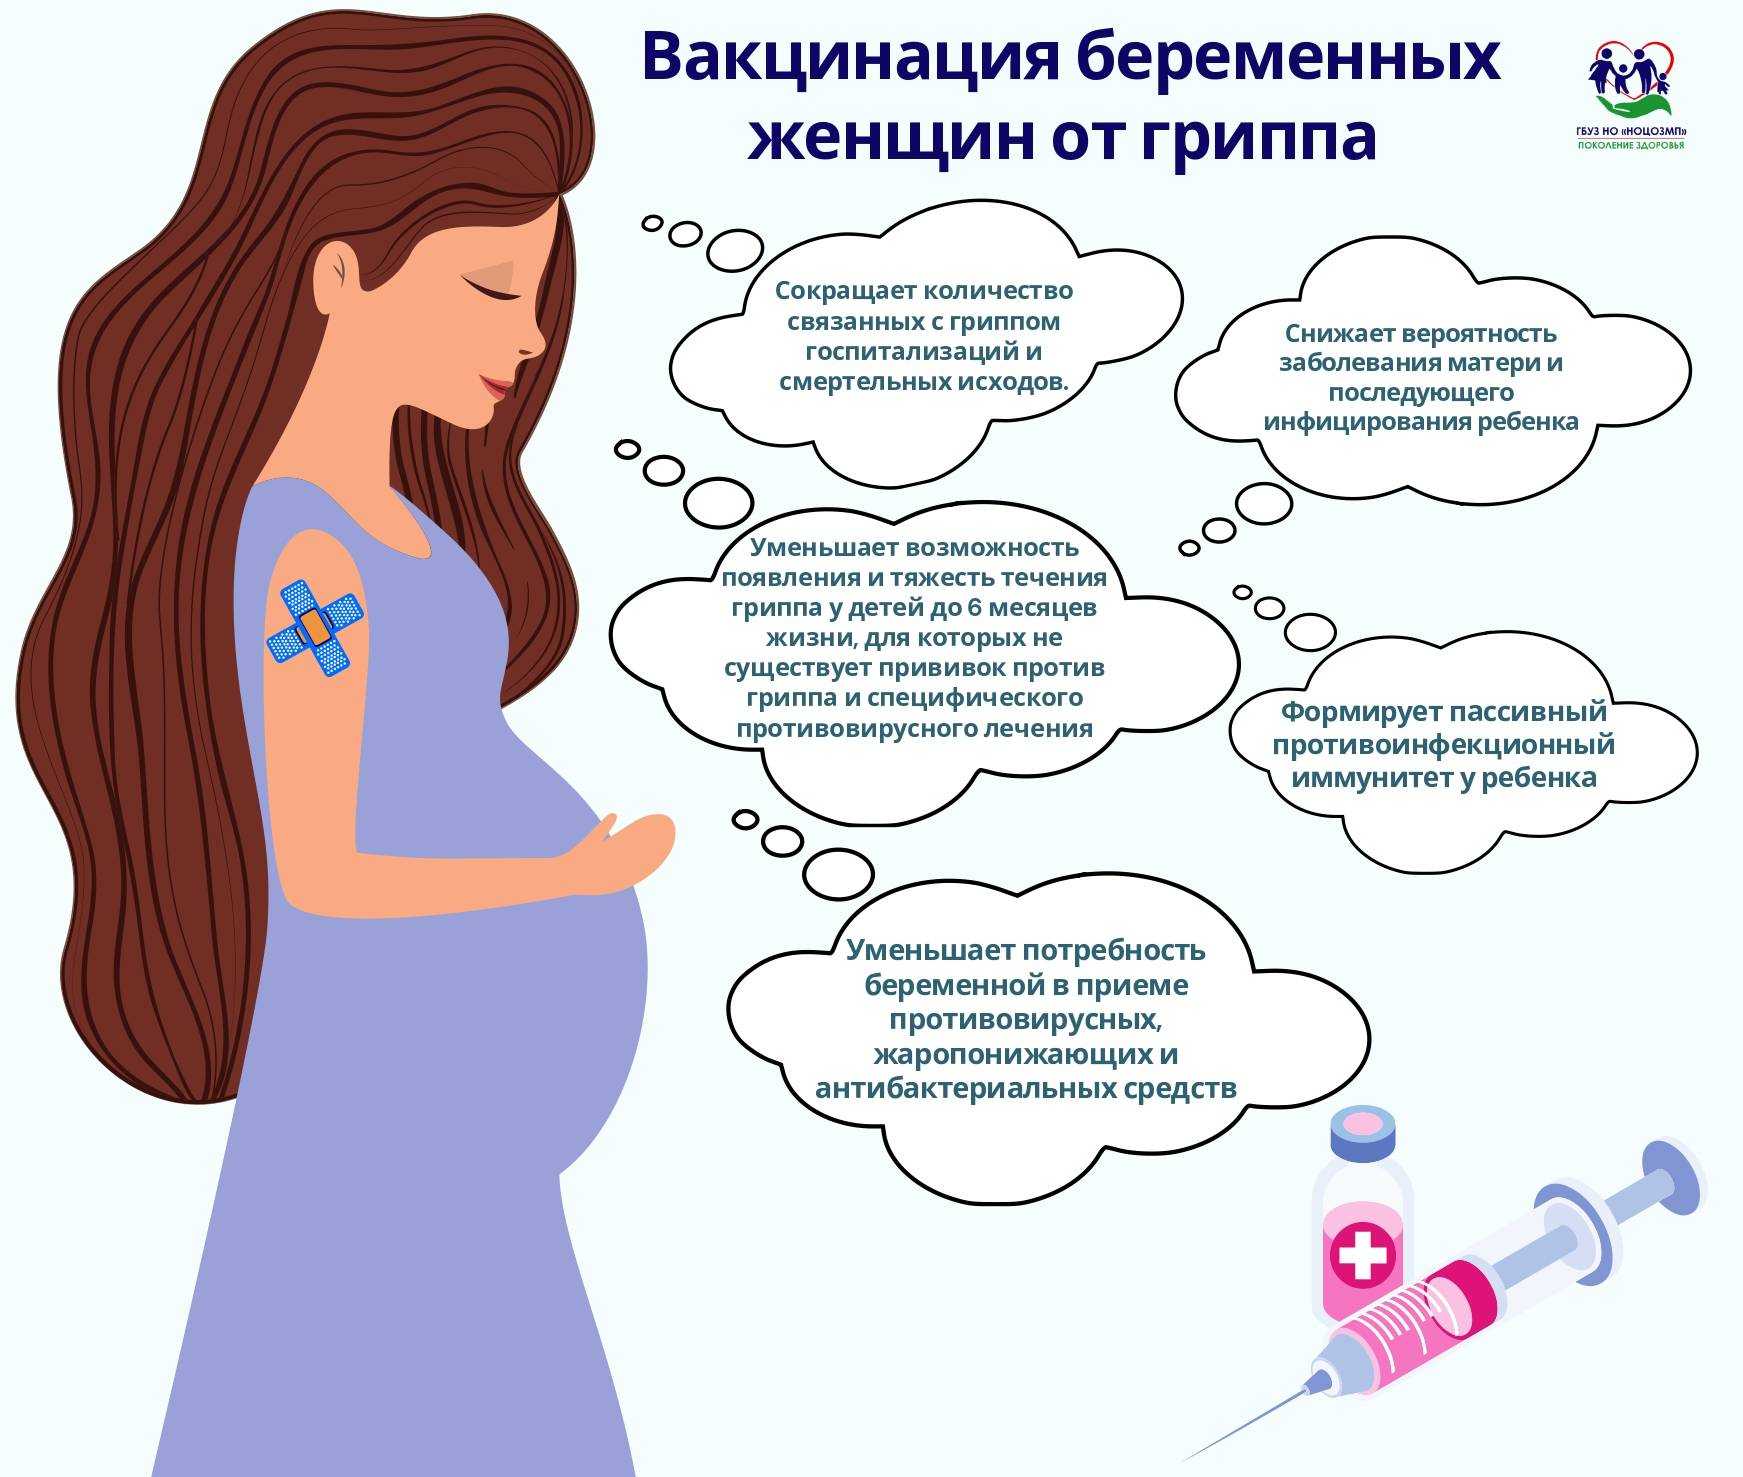 Вакцинация беременных. Вакцинация беременной памятка. Памятка для переменных. Памятка для беременных женщин.